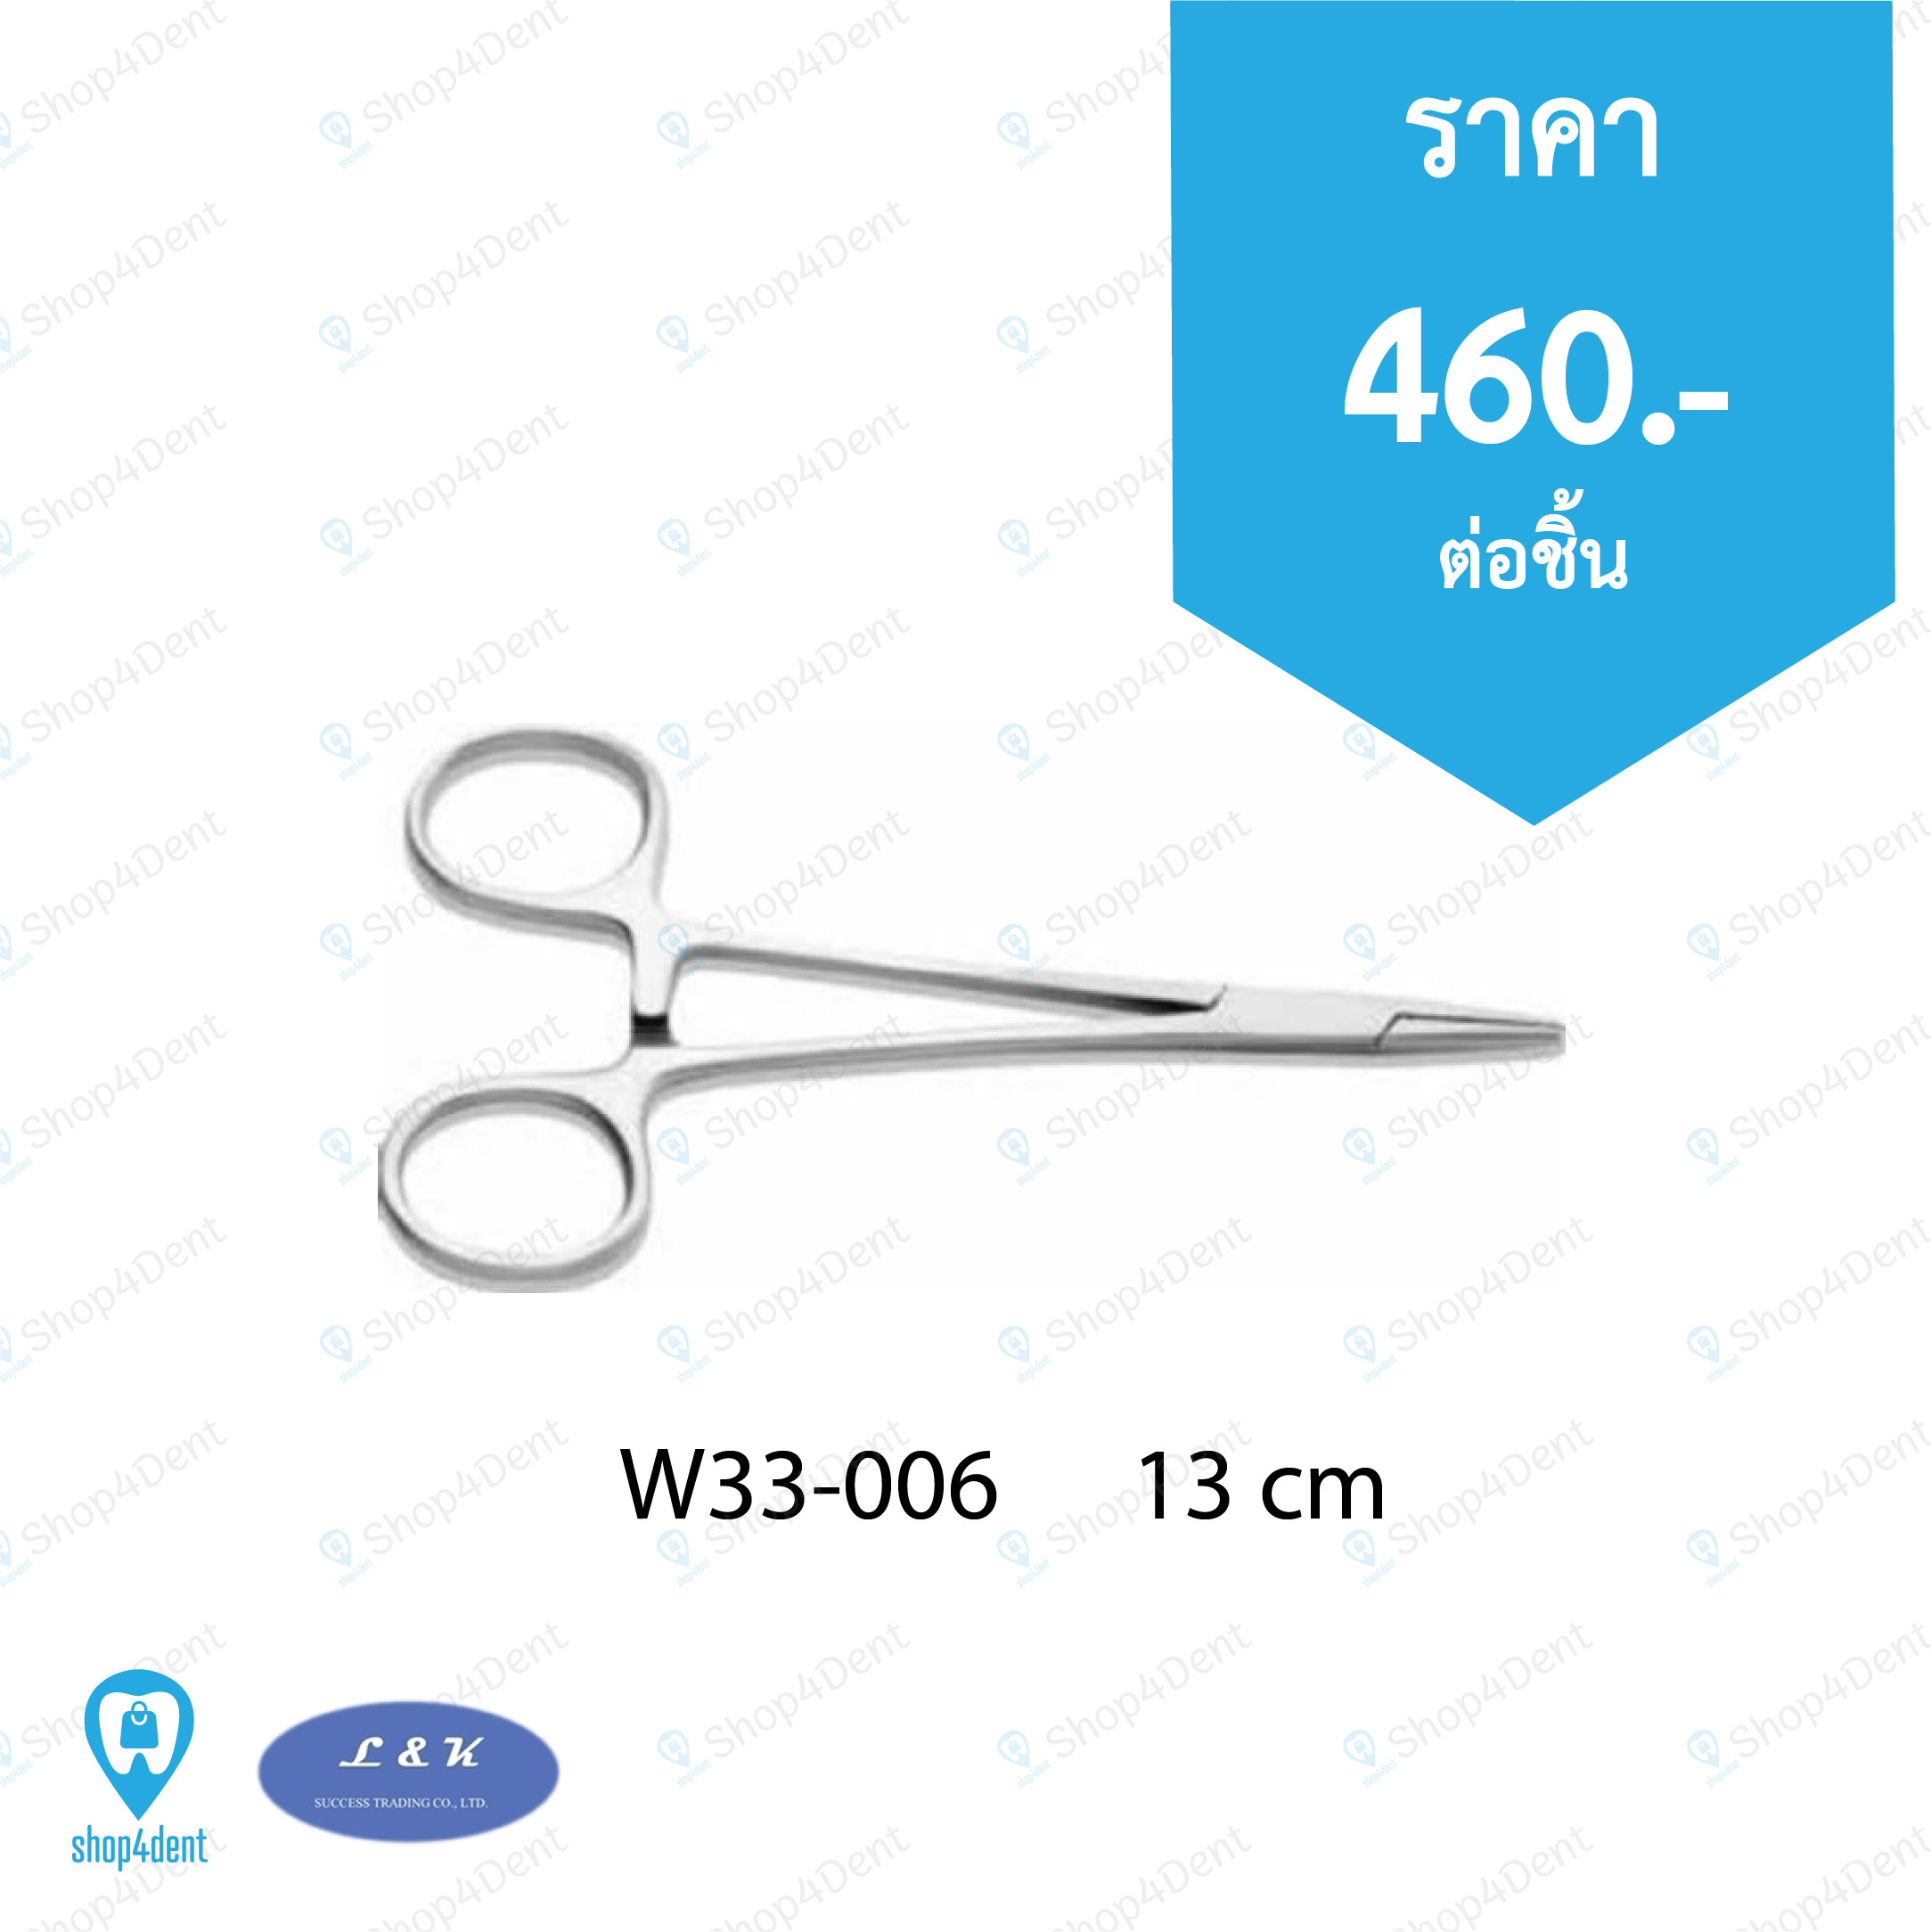 Needle Holders W33-006      13 cm